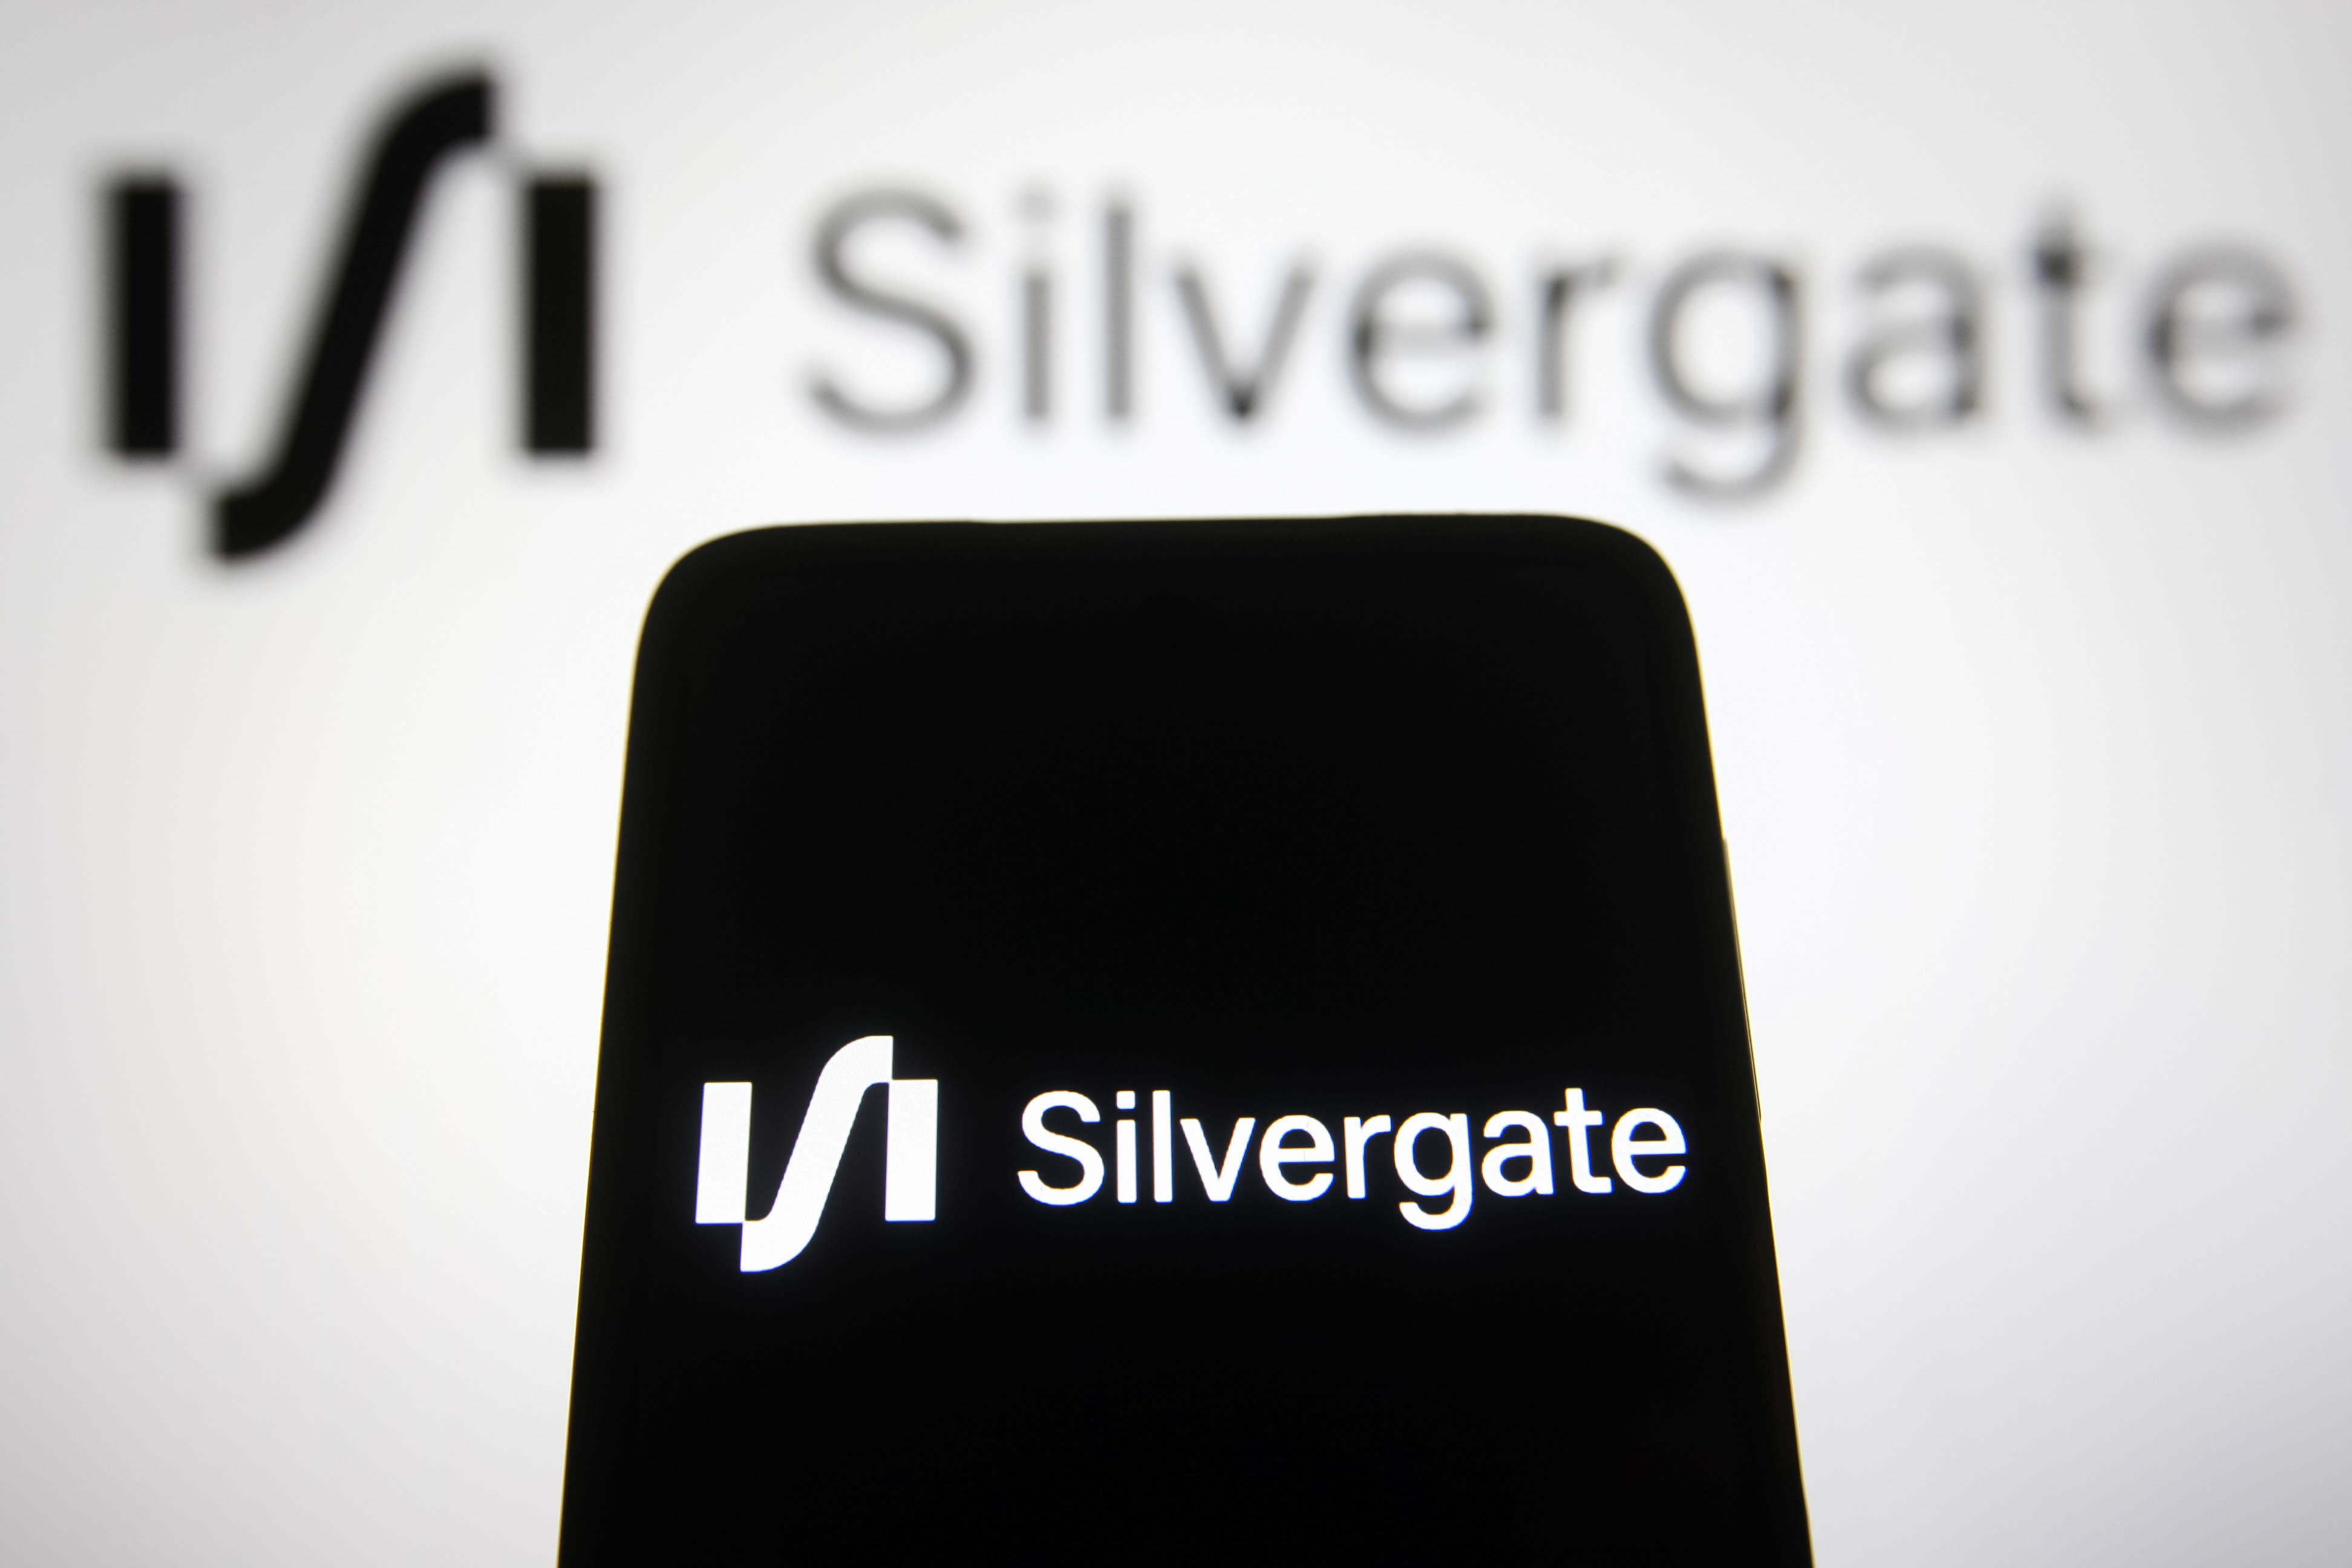 Silvergate, Etsy, SVB Financial, Uber y más